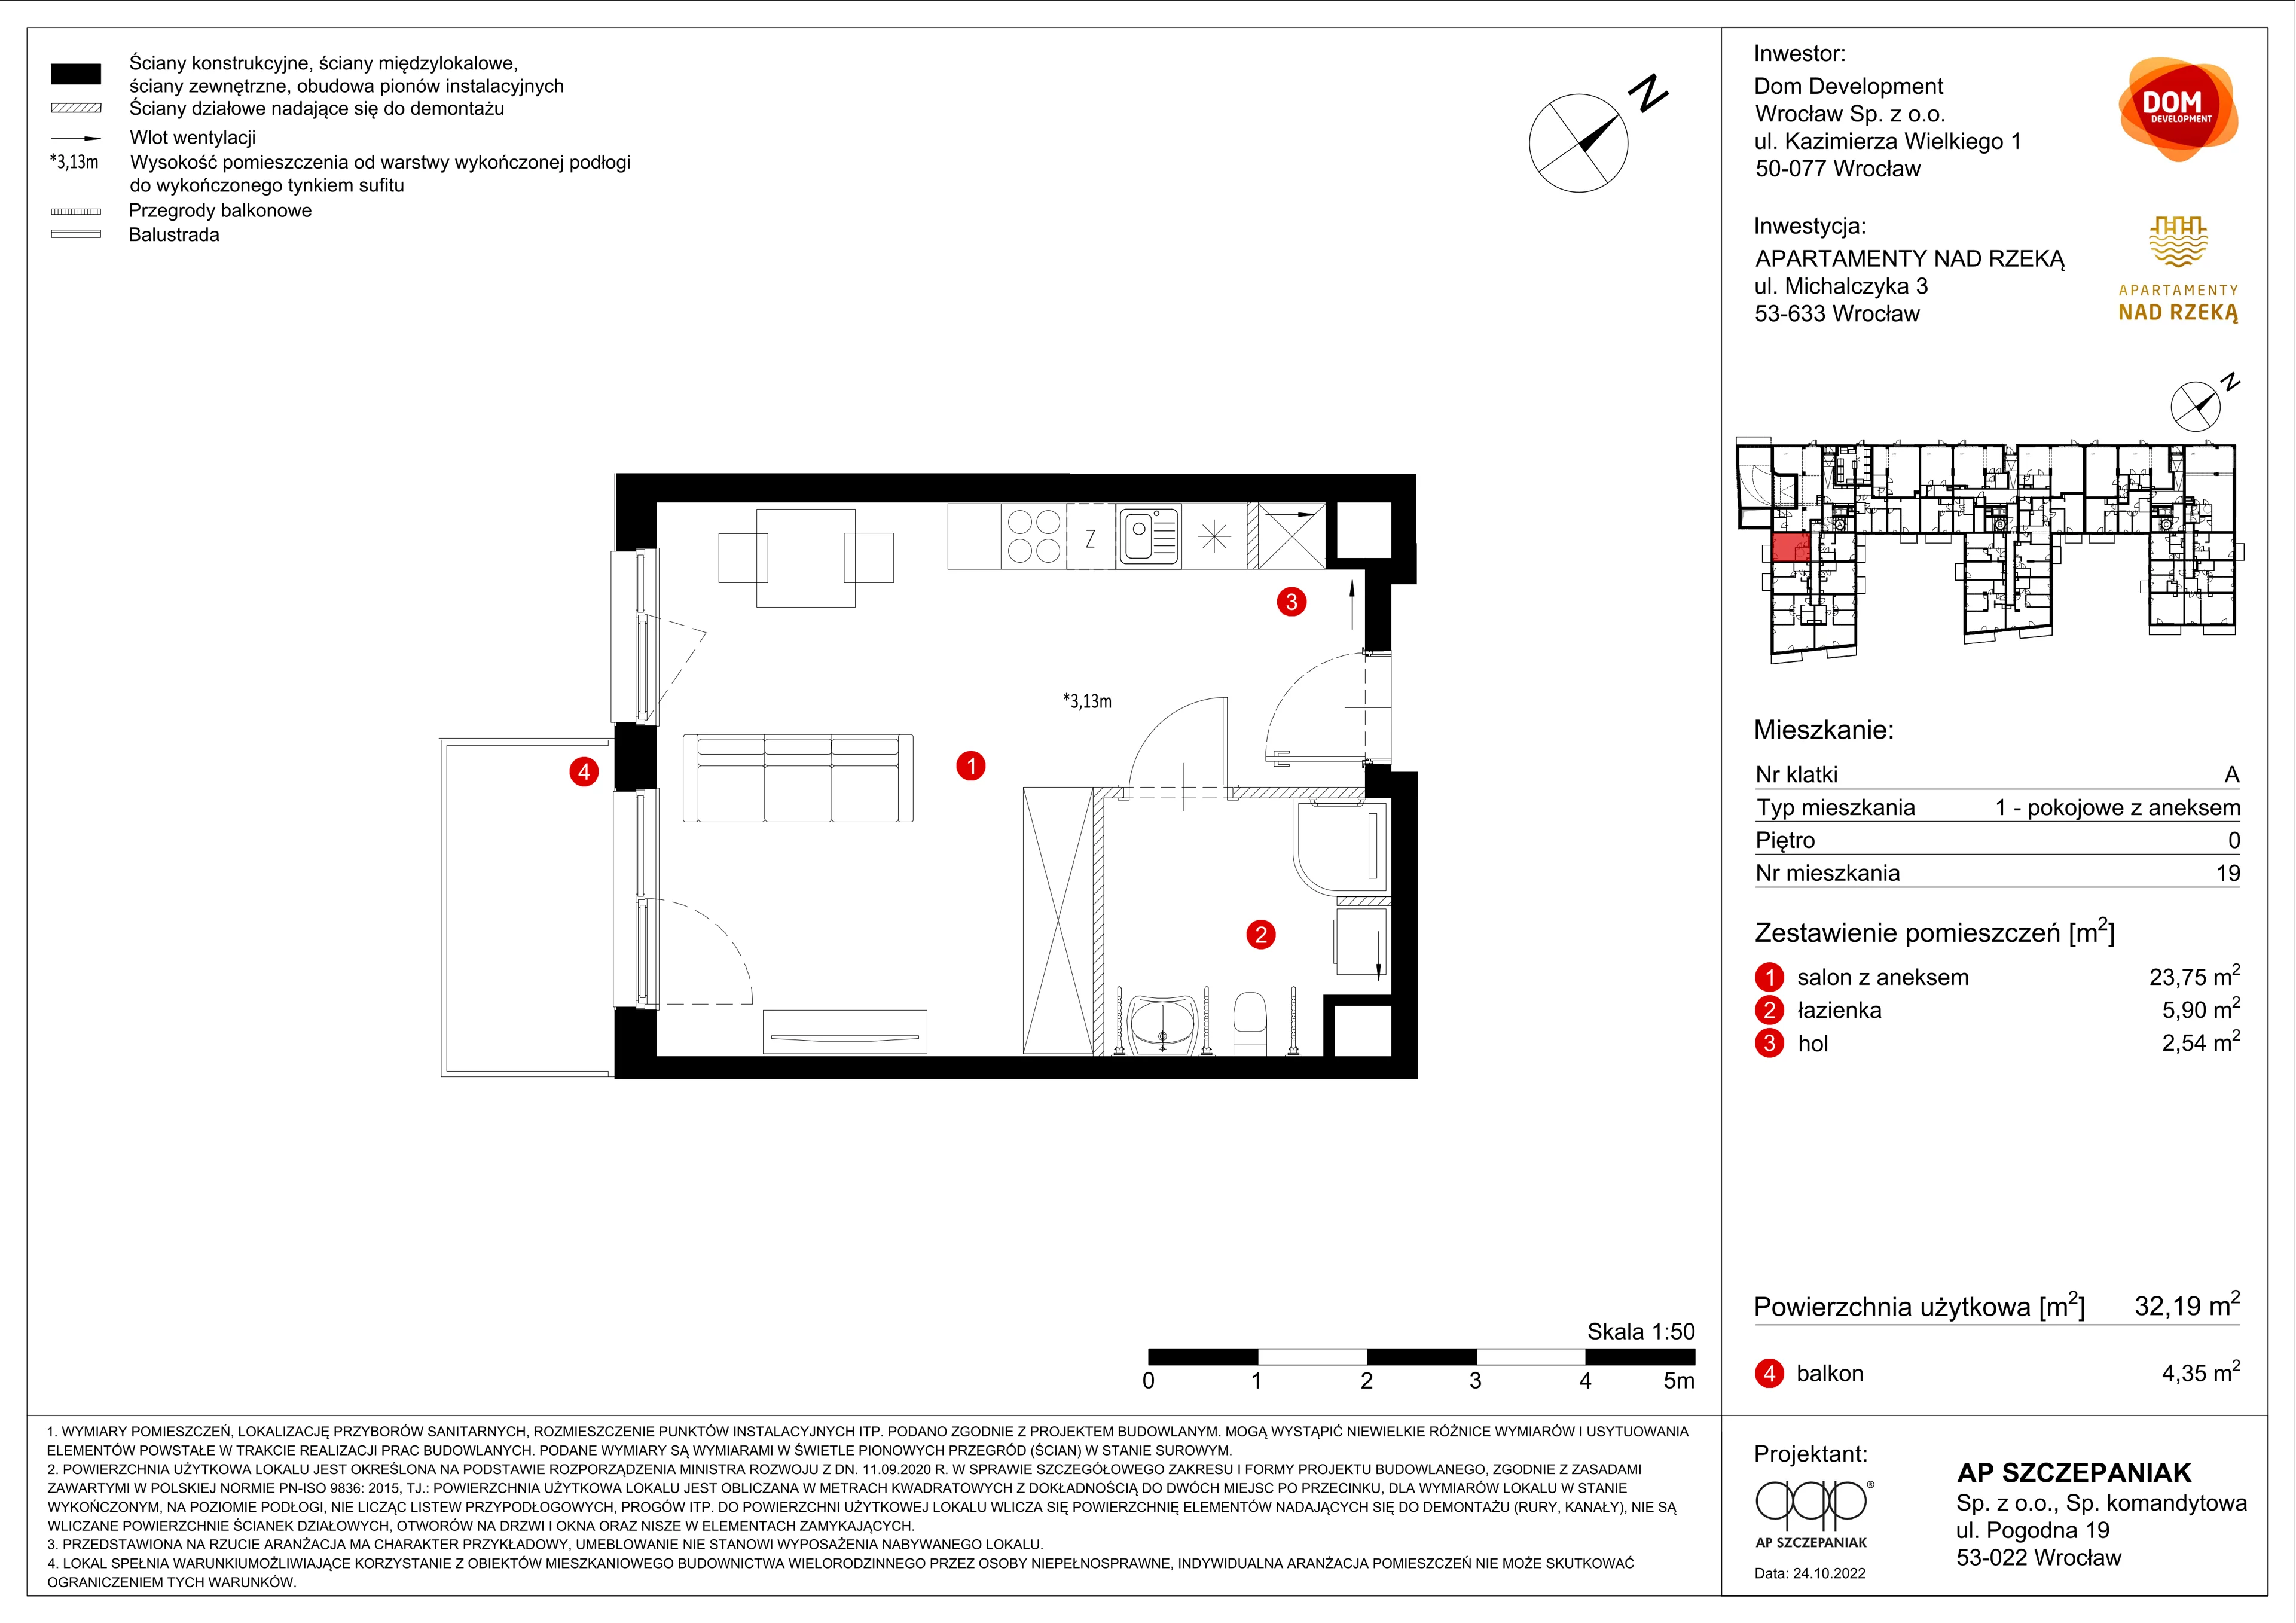 Mieszkanie 32,19 m², parter, oferta nr A/19, Apartamenty Nad Rzeką, Wrocław, Stare Miasto, ul. Michalczyka 3